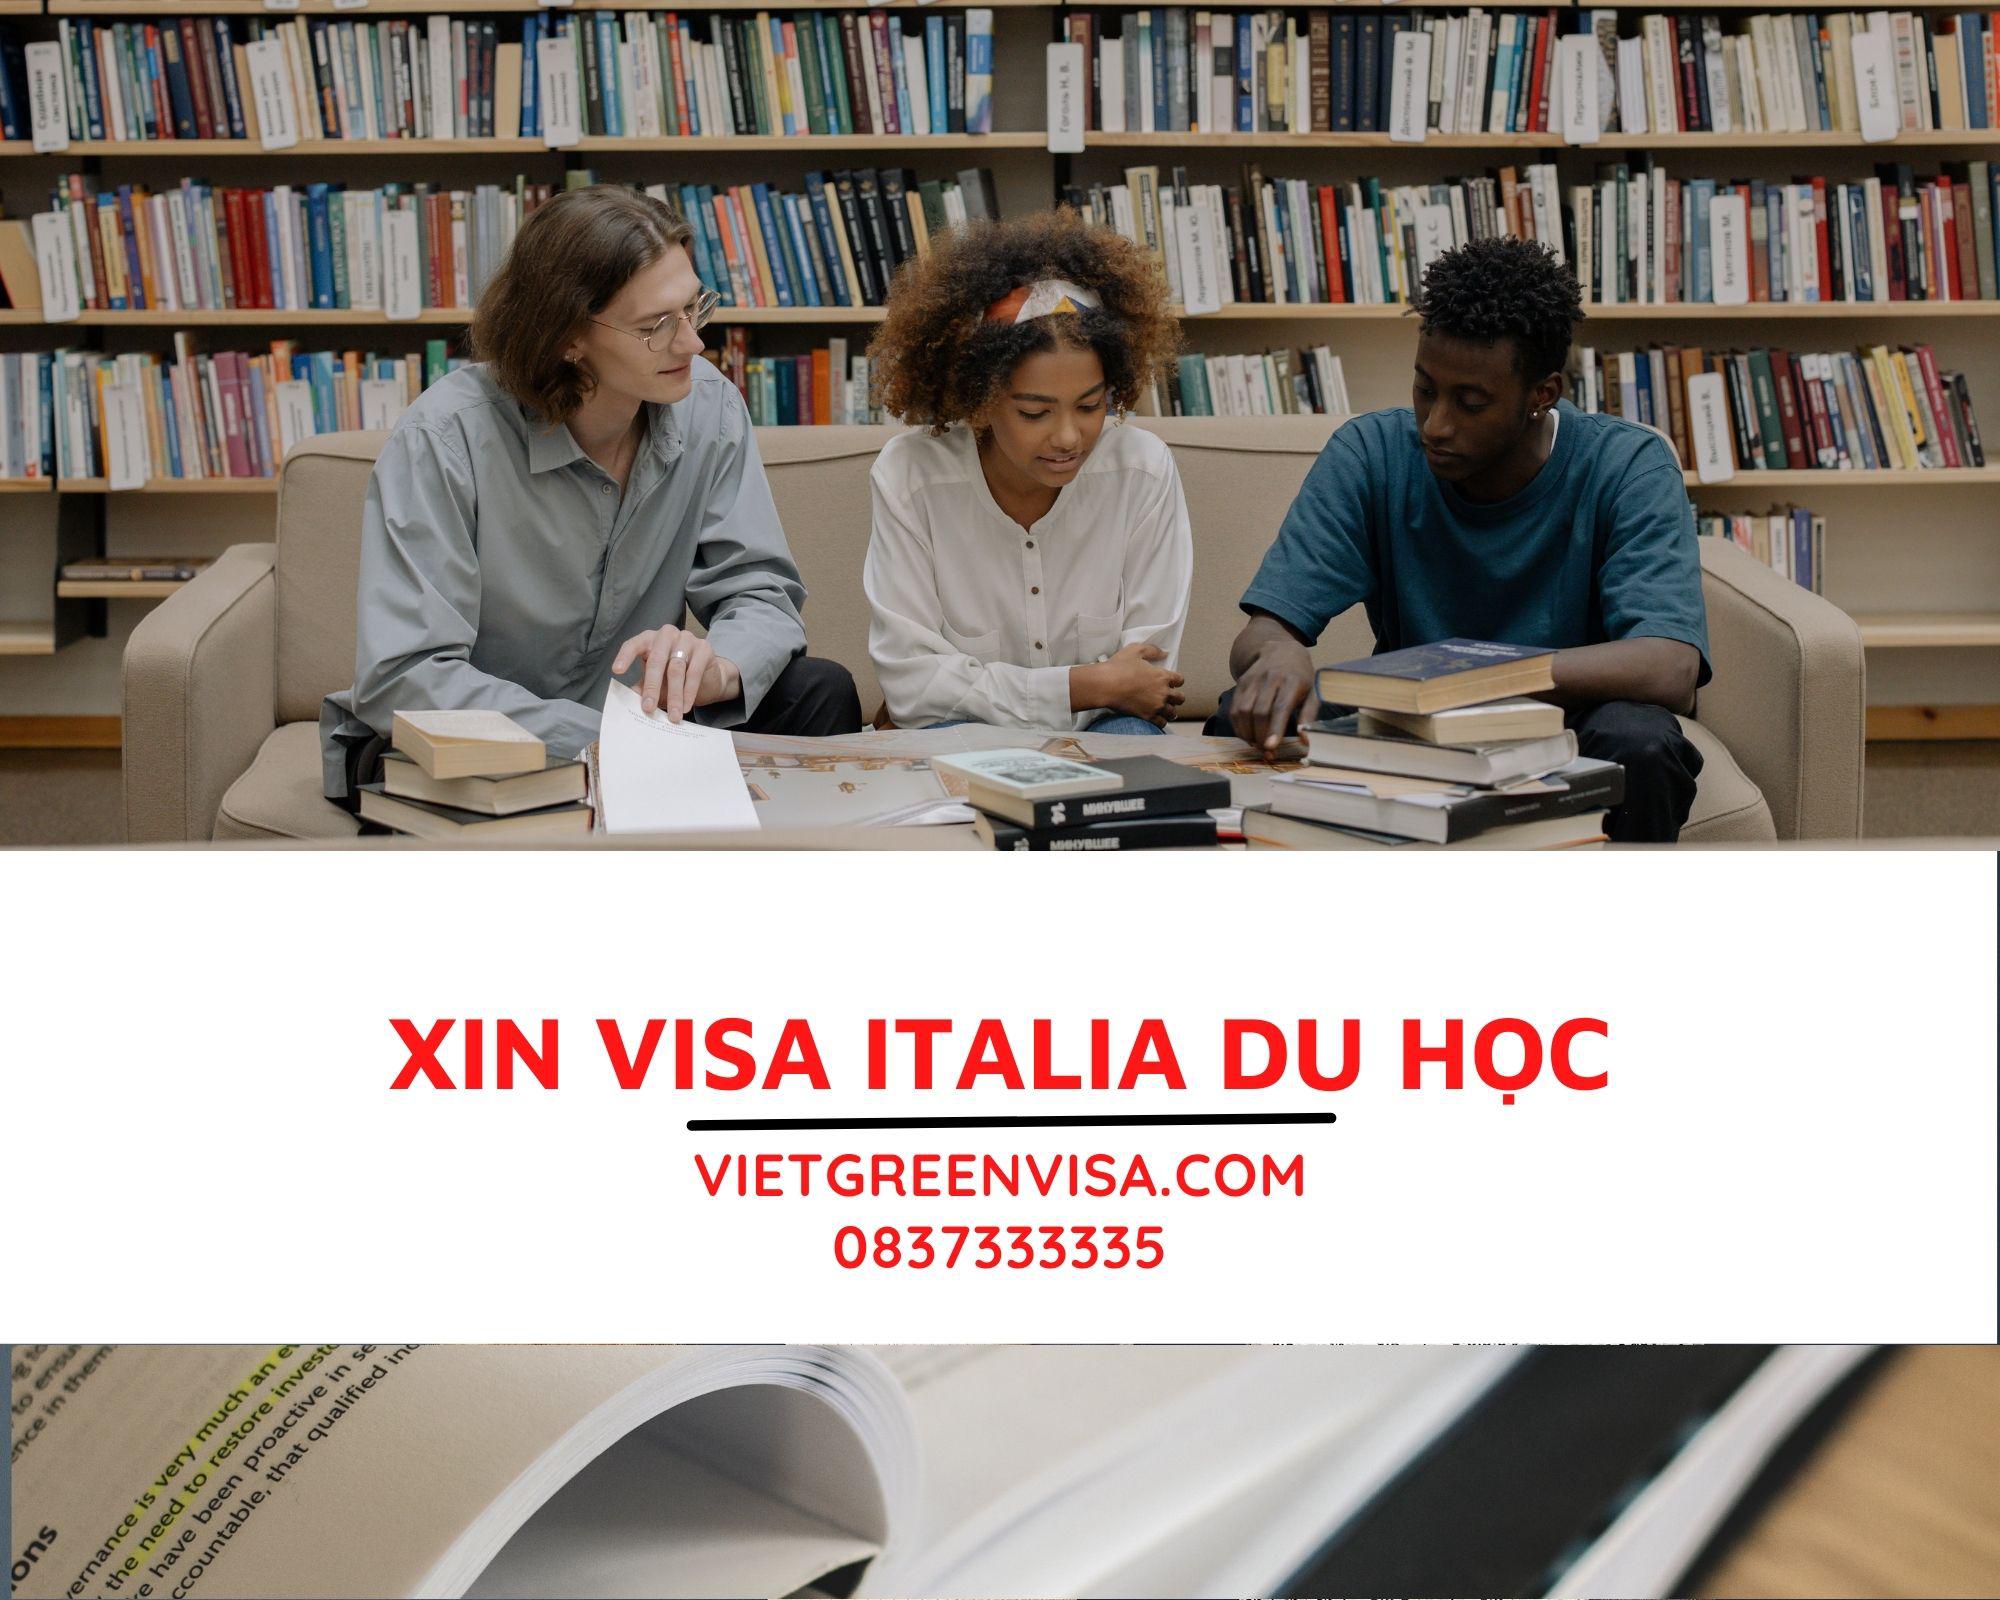 Dịch vụ hỗ trợ visa du học Italia chuyên nghiệp